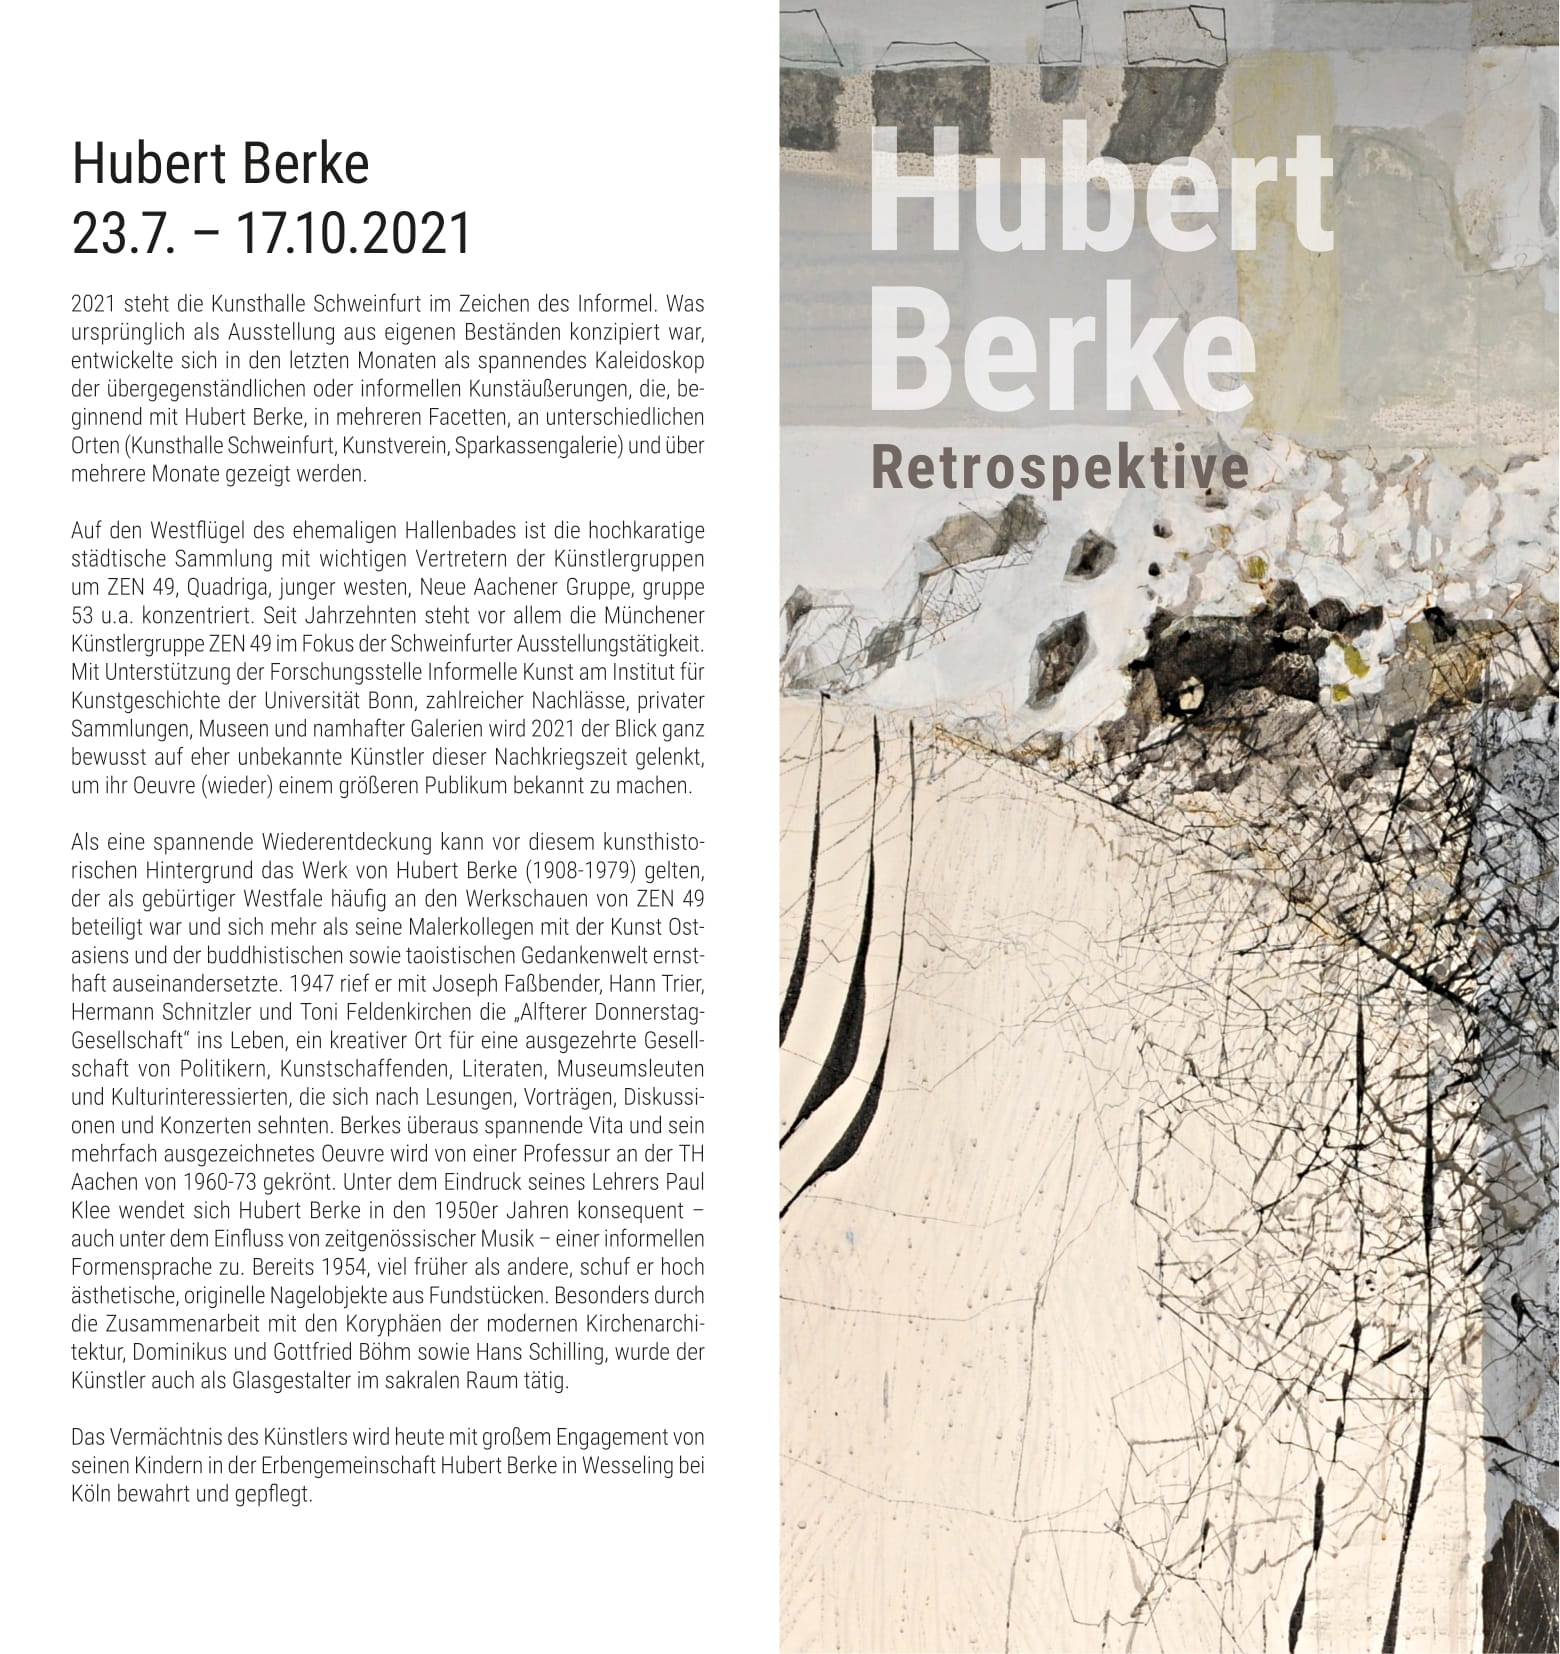 Hubert Berke  Retrospektive – Ausstellung in der Kunsthalle Schweinfurt